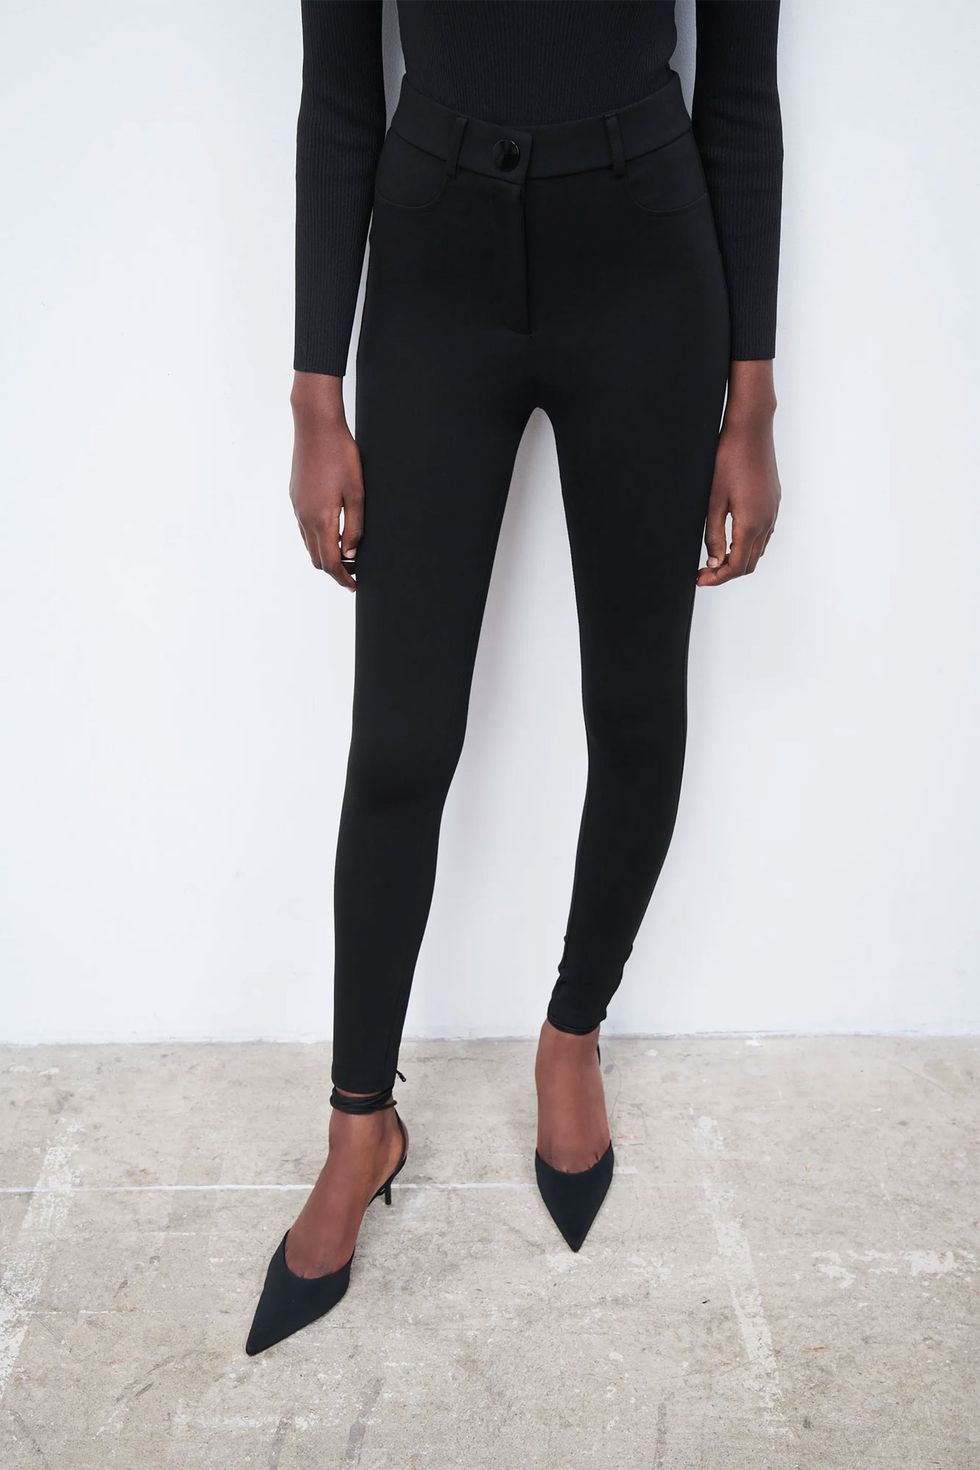 Estos leggings de Zara tienen efecto moldeador y reductor